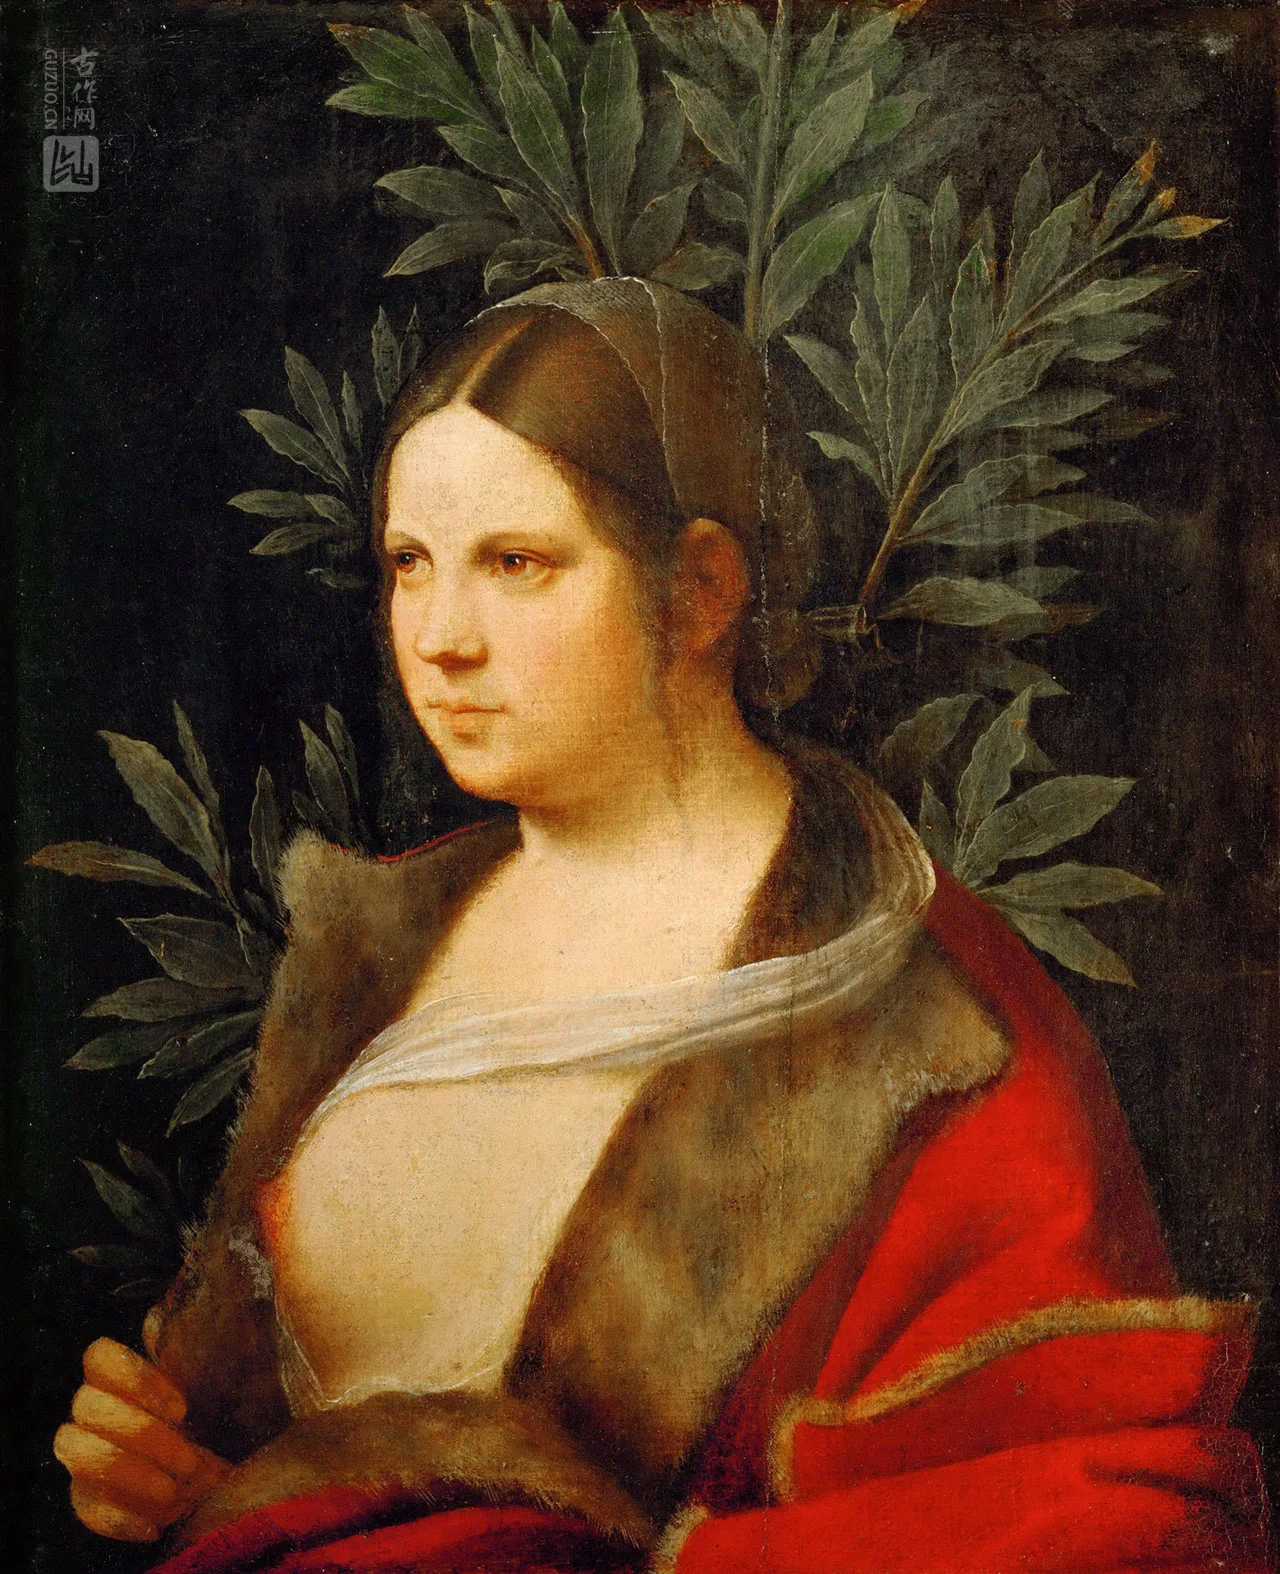 乔尔乔内油画肖像作品《一个年轻女人的肖像》